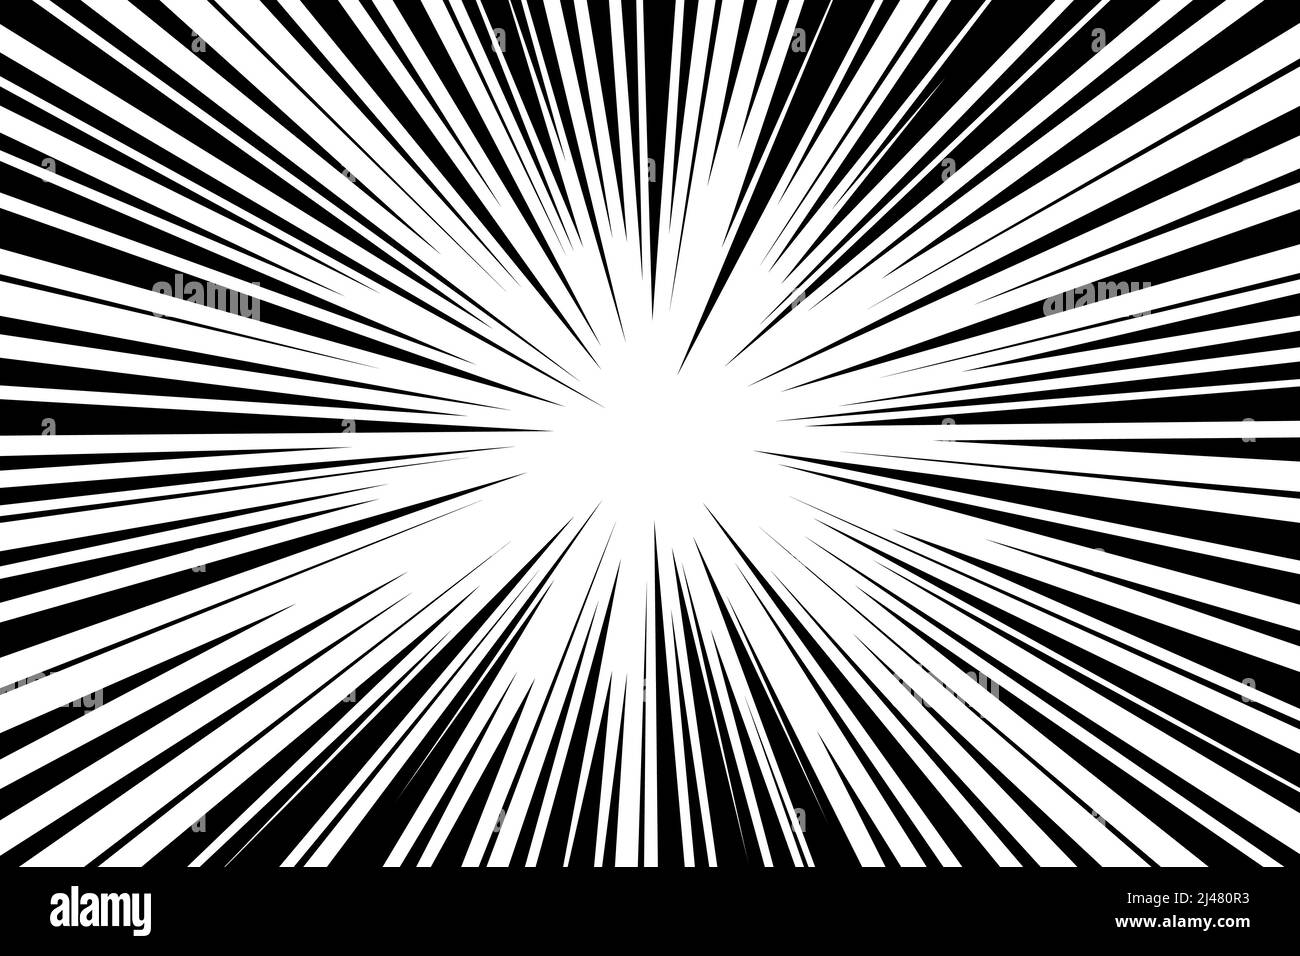 Líneas de movimiento radial de tiras cómicas. ANIME cómics libro héroe velocidad o lucha acción textura rayos. Manga dibujos de dibujos de explosiones fondo. Ilustración del vector eps Ilustración del Vector